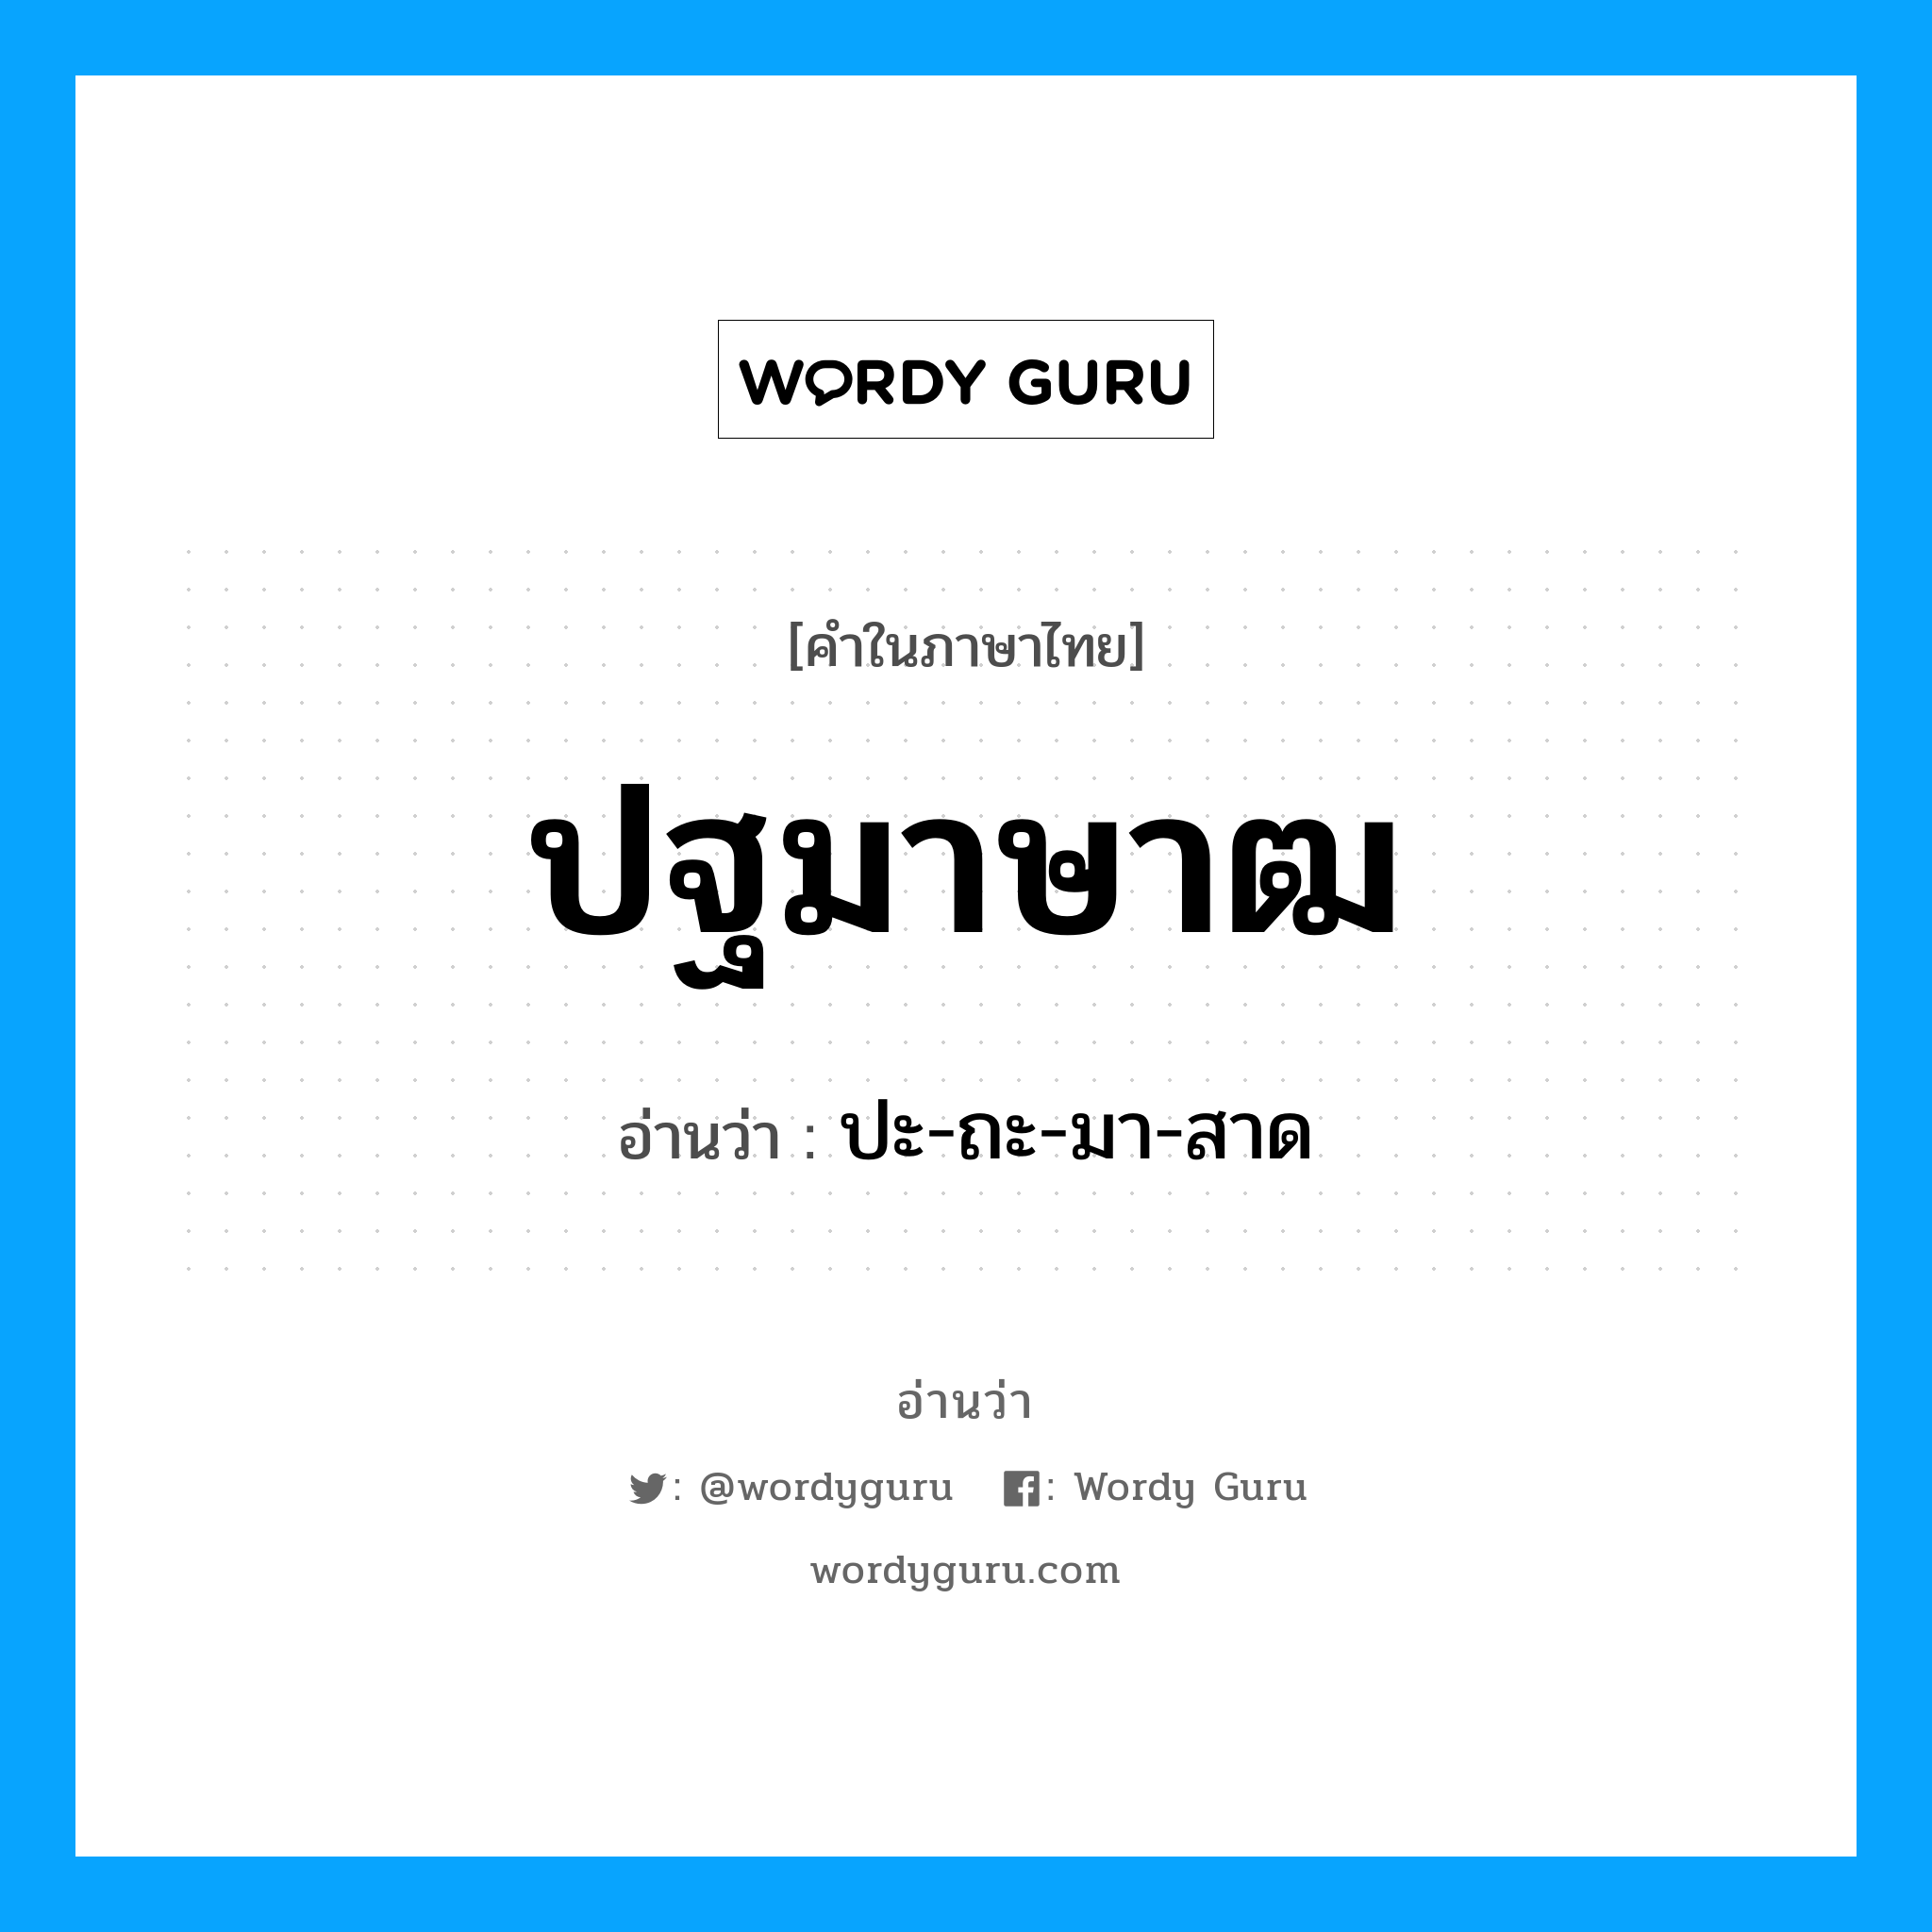 ปะ-ถะ-มา-สาด เป็นคำอ่านของคำไหน?, คำในภาษาไทย ปะ-ถะ-มา-สาด อ่านว่า ปฐมาษาฒ